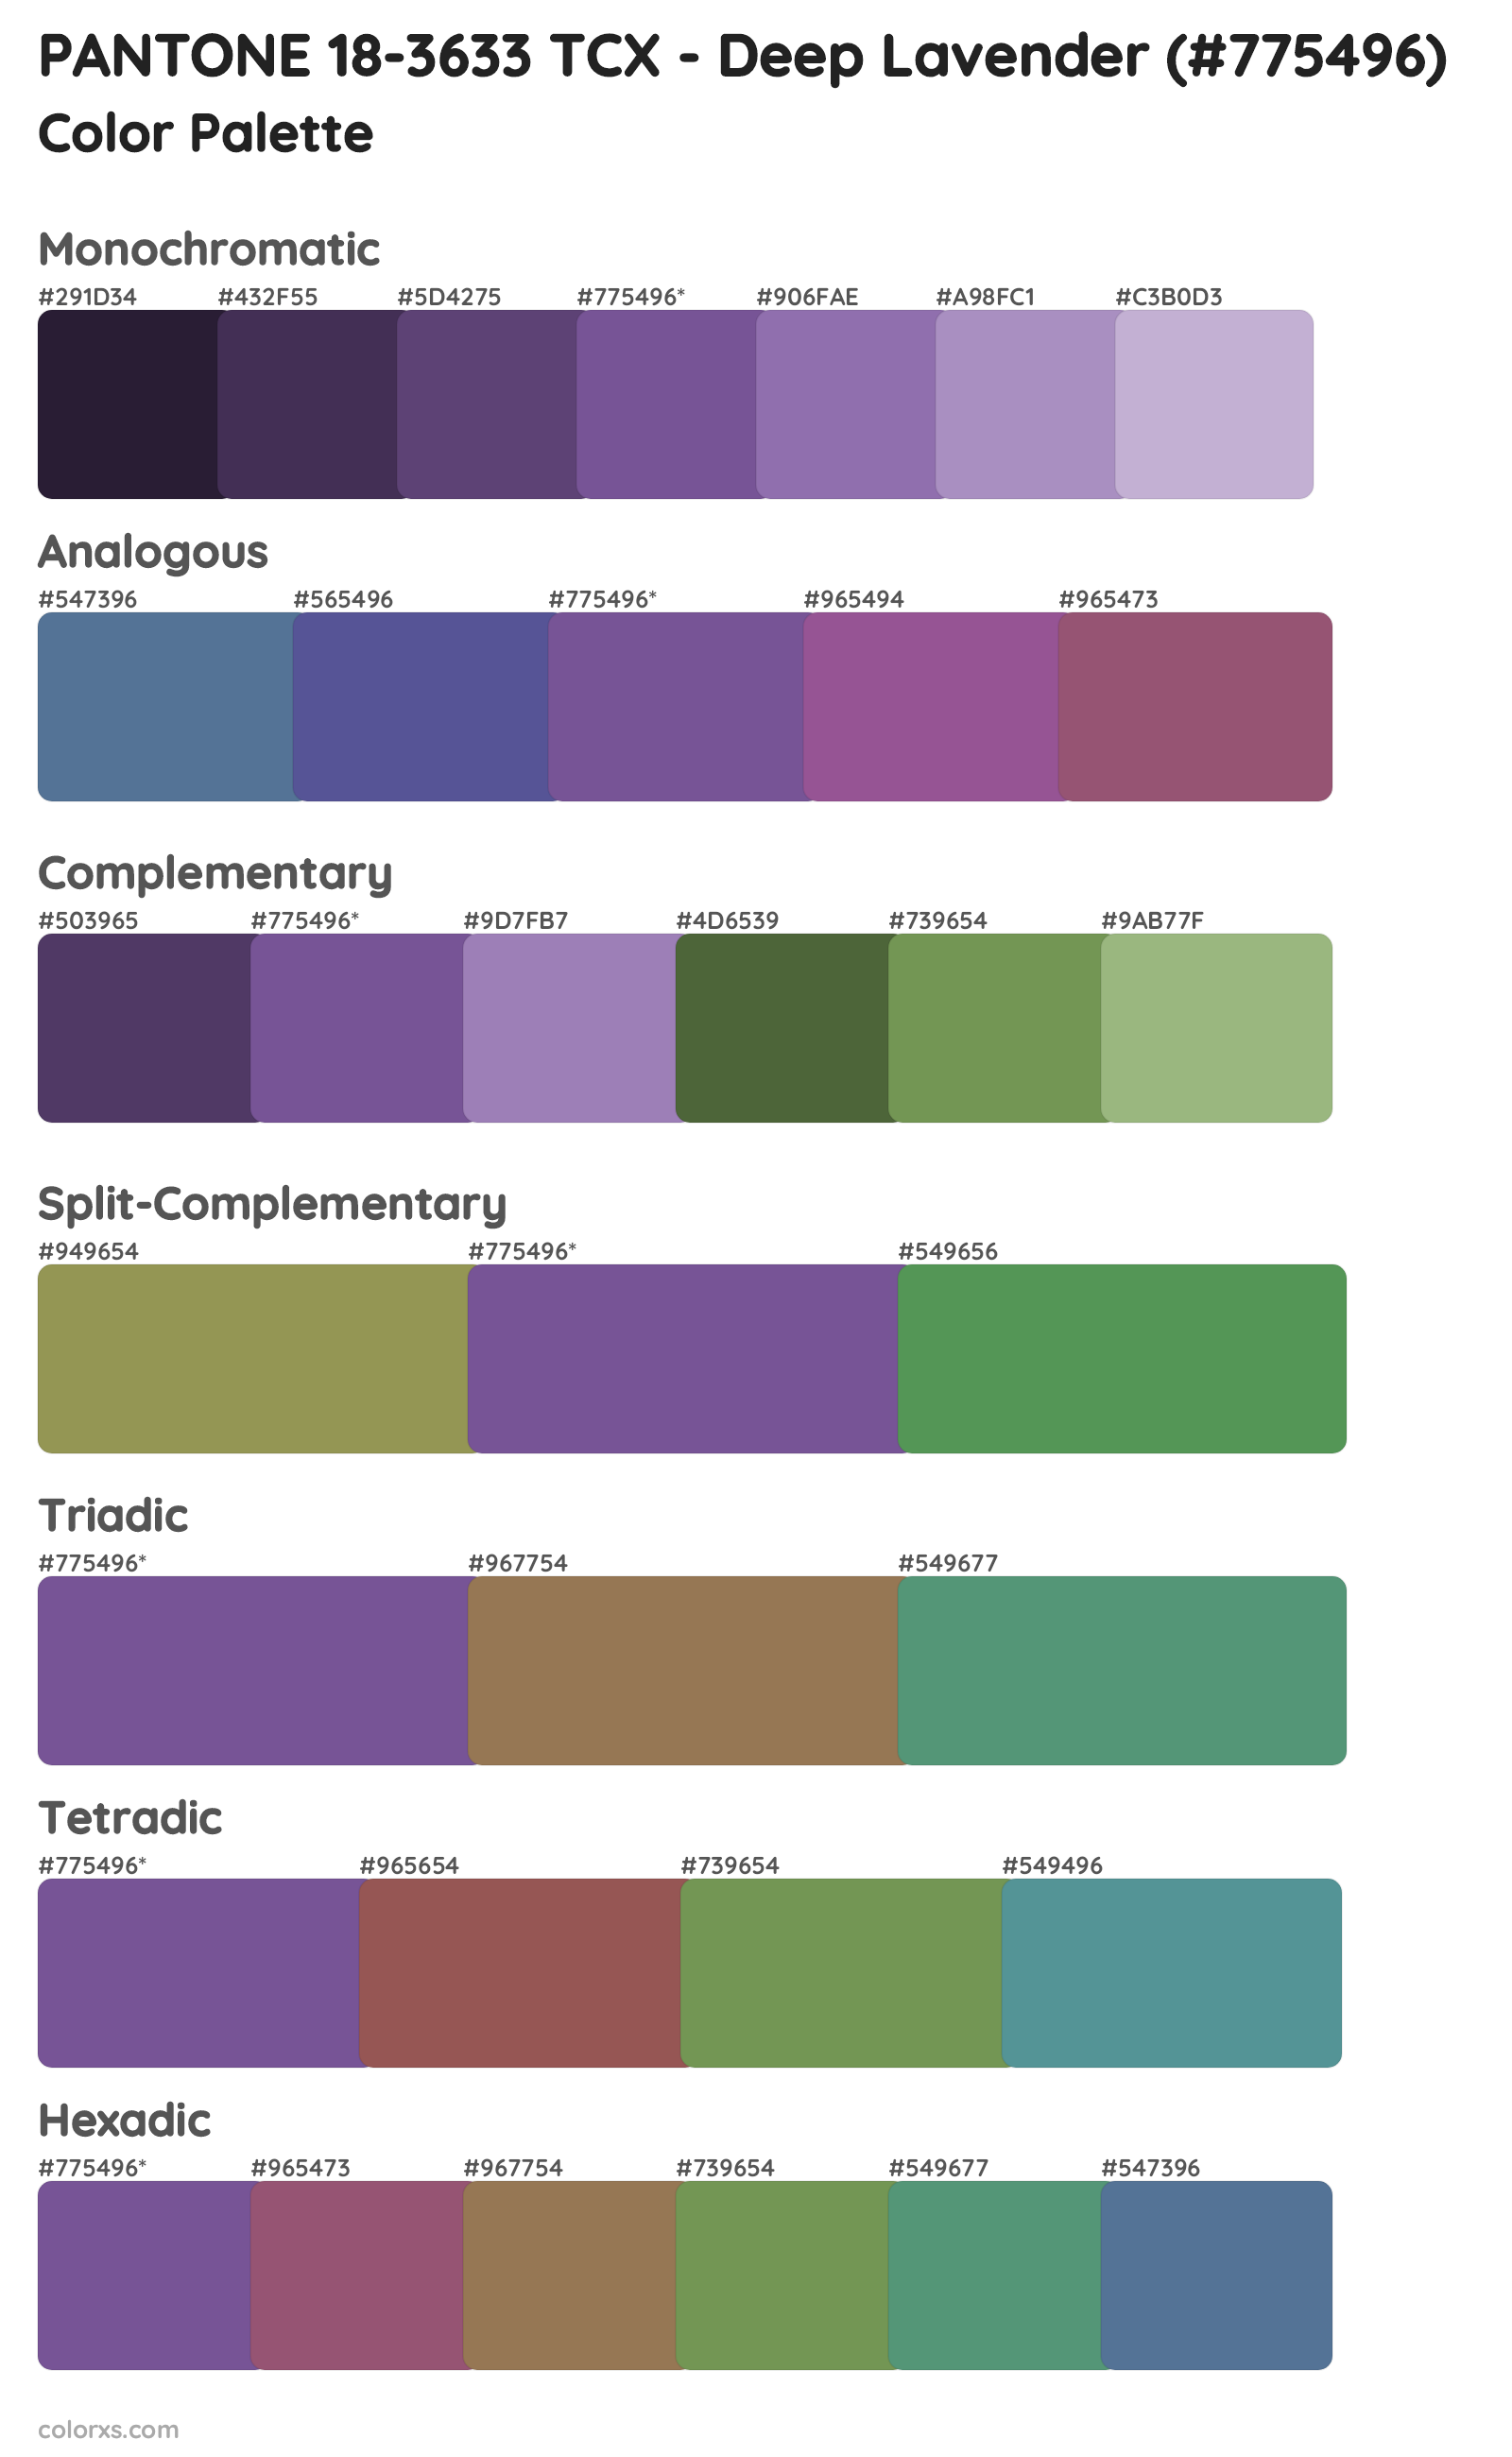 PANTONE 18-3633 TCX - Deep Lavender Color Scheme Palettes